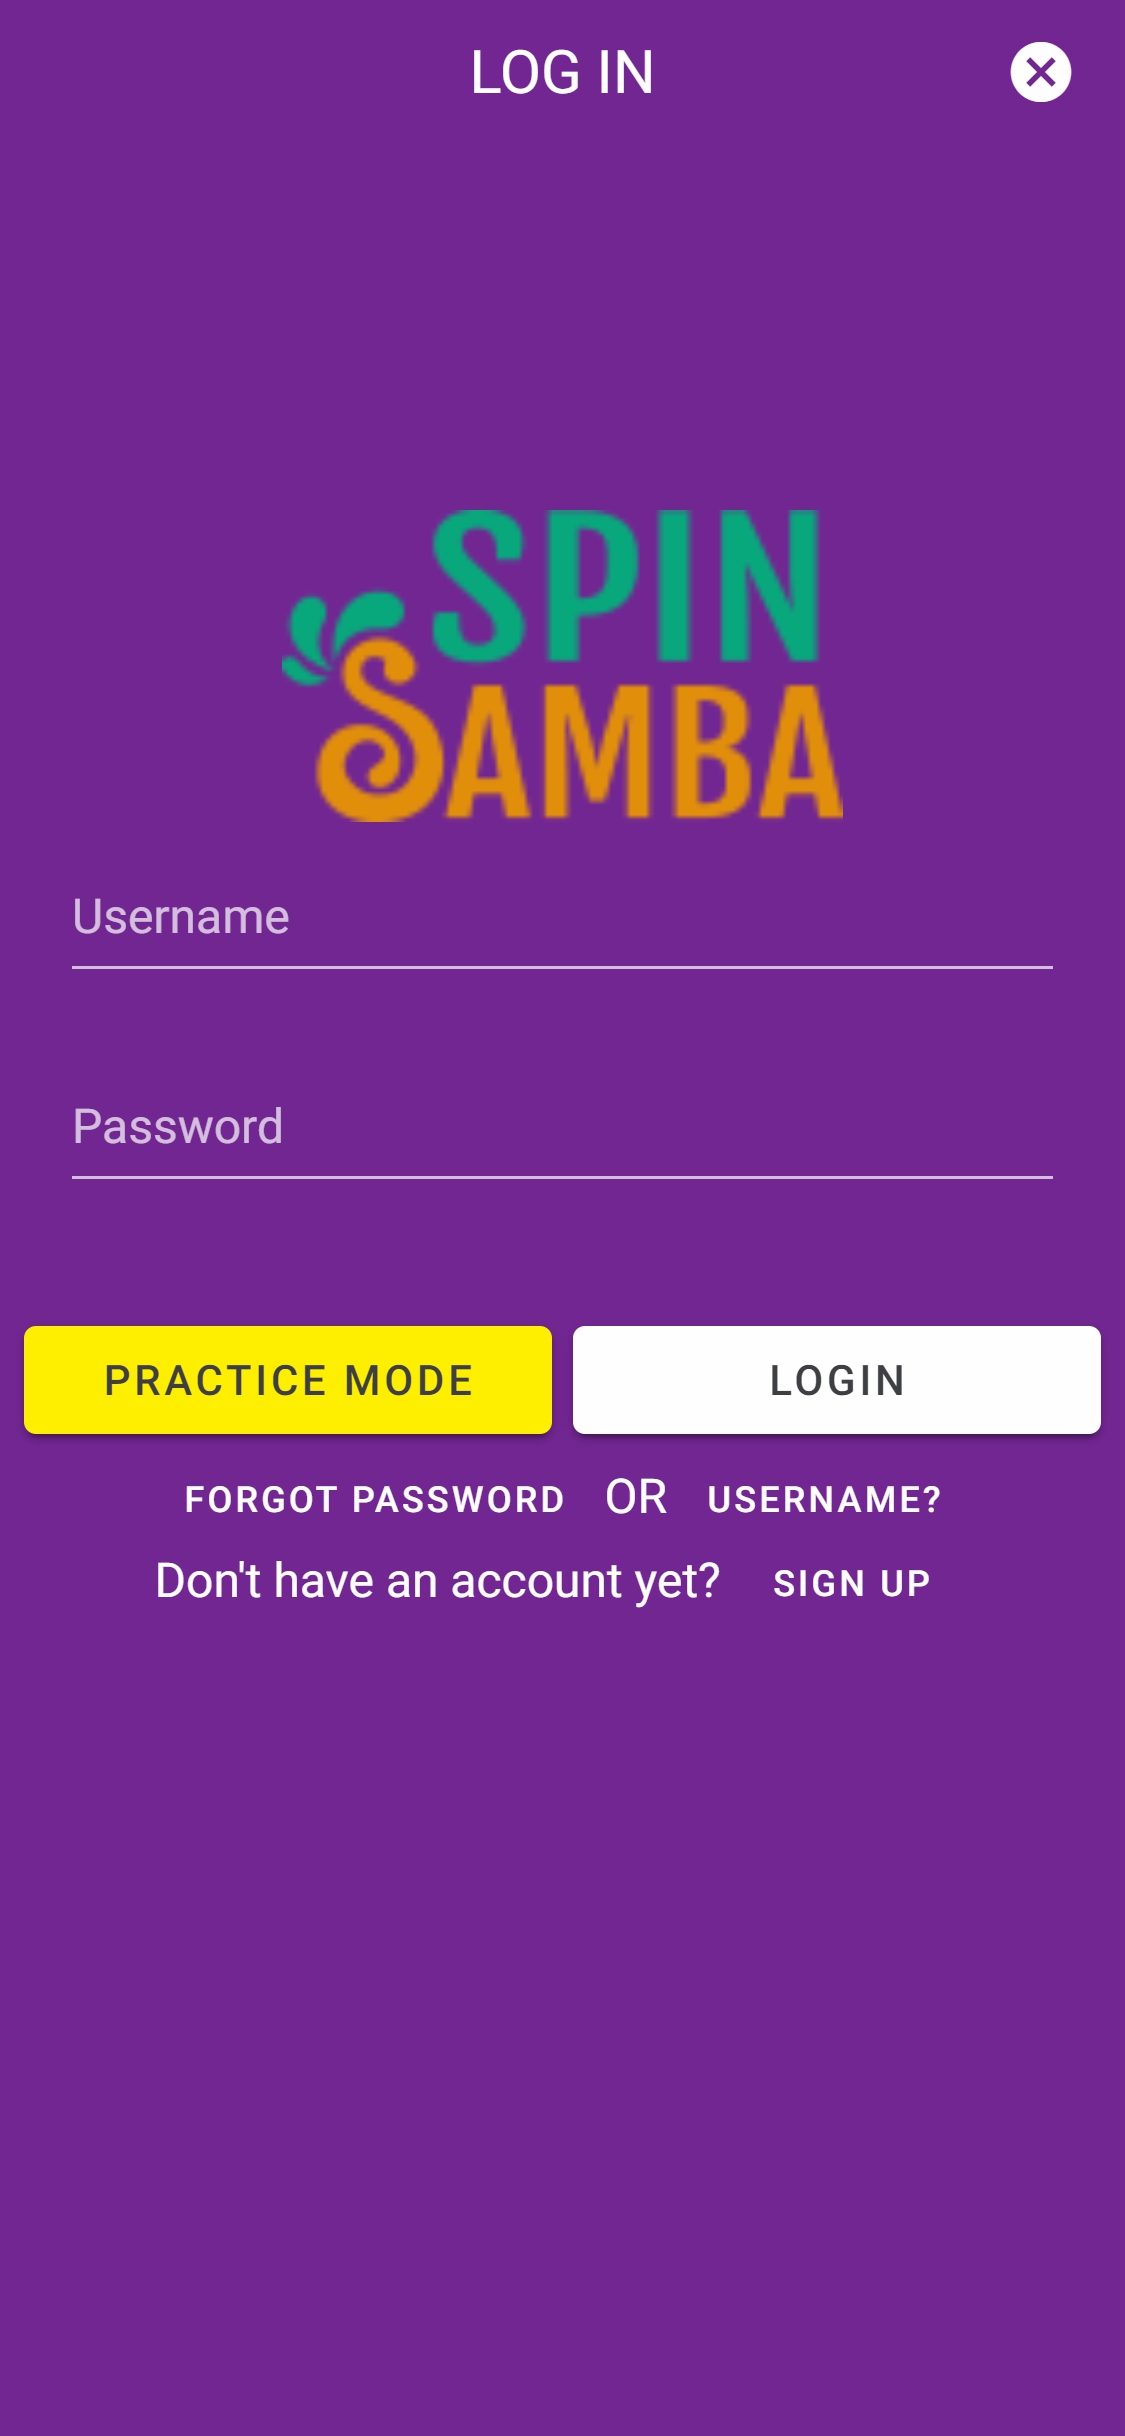 Spin Samba Mobile Login Review